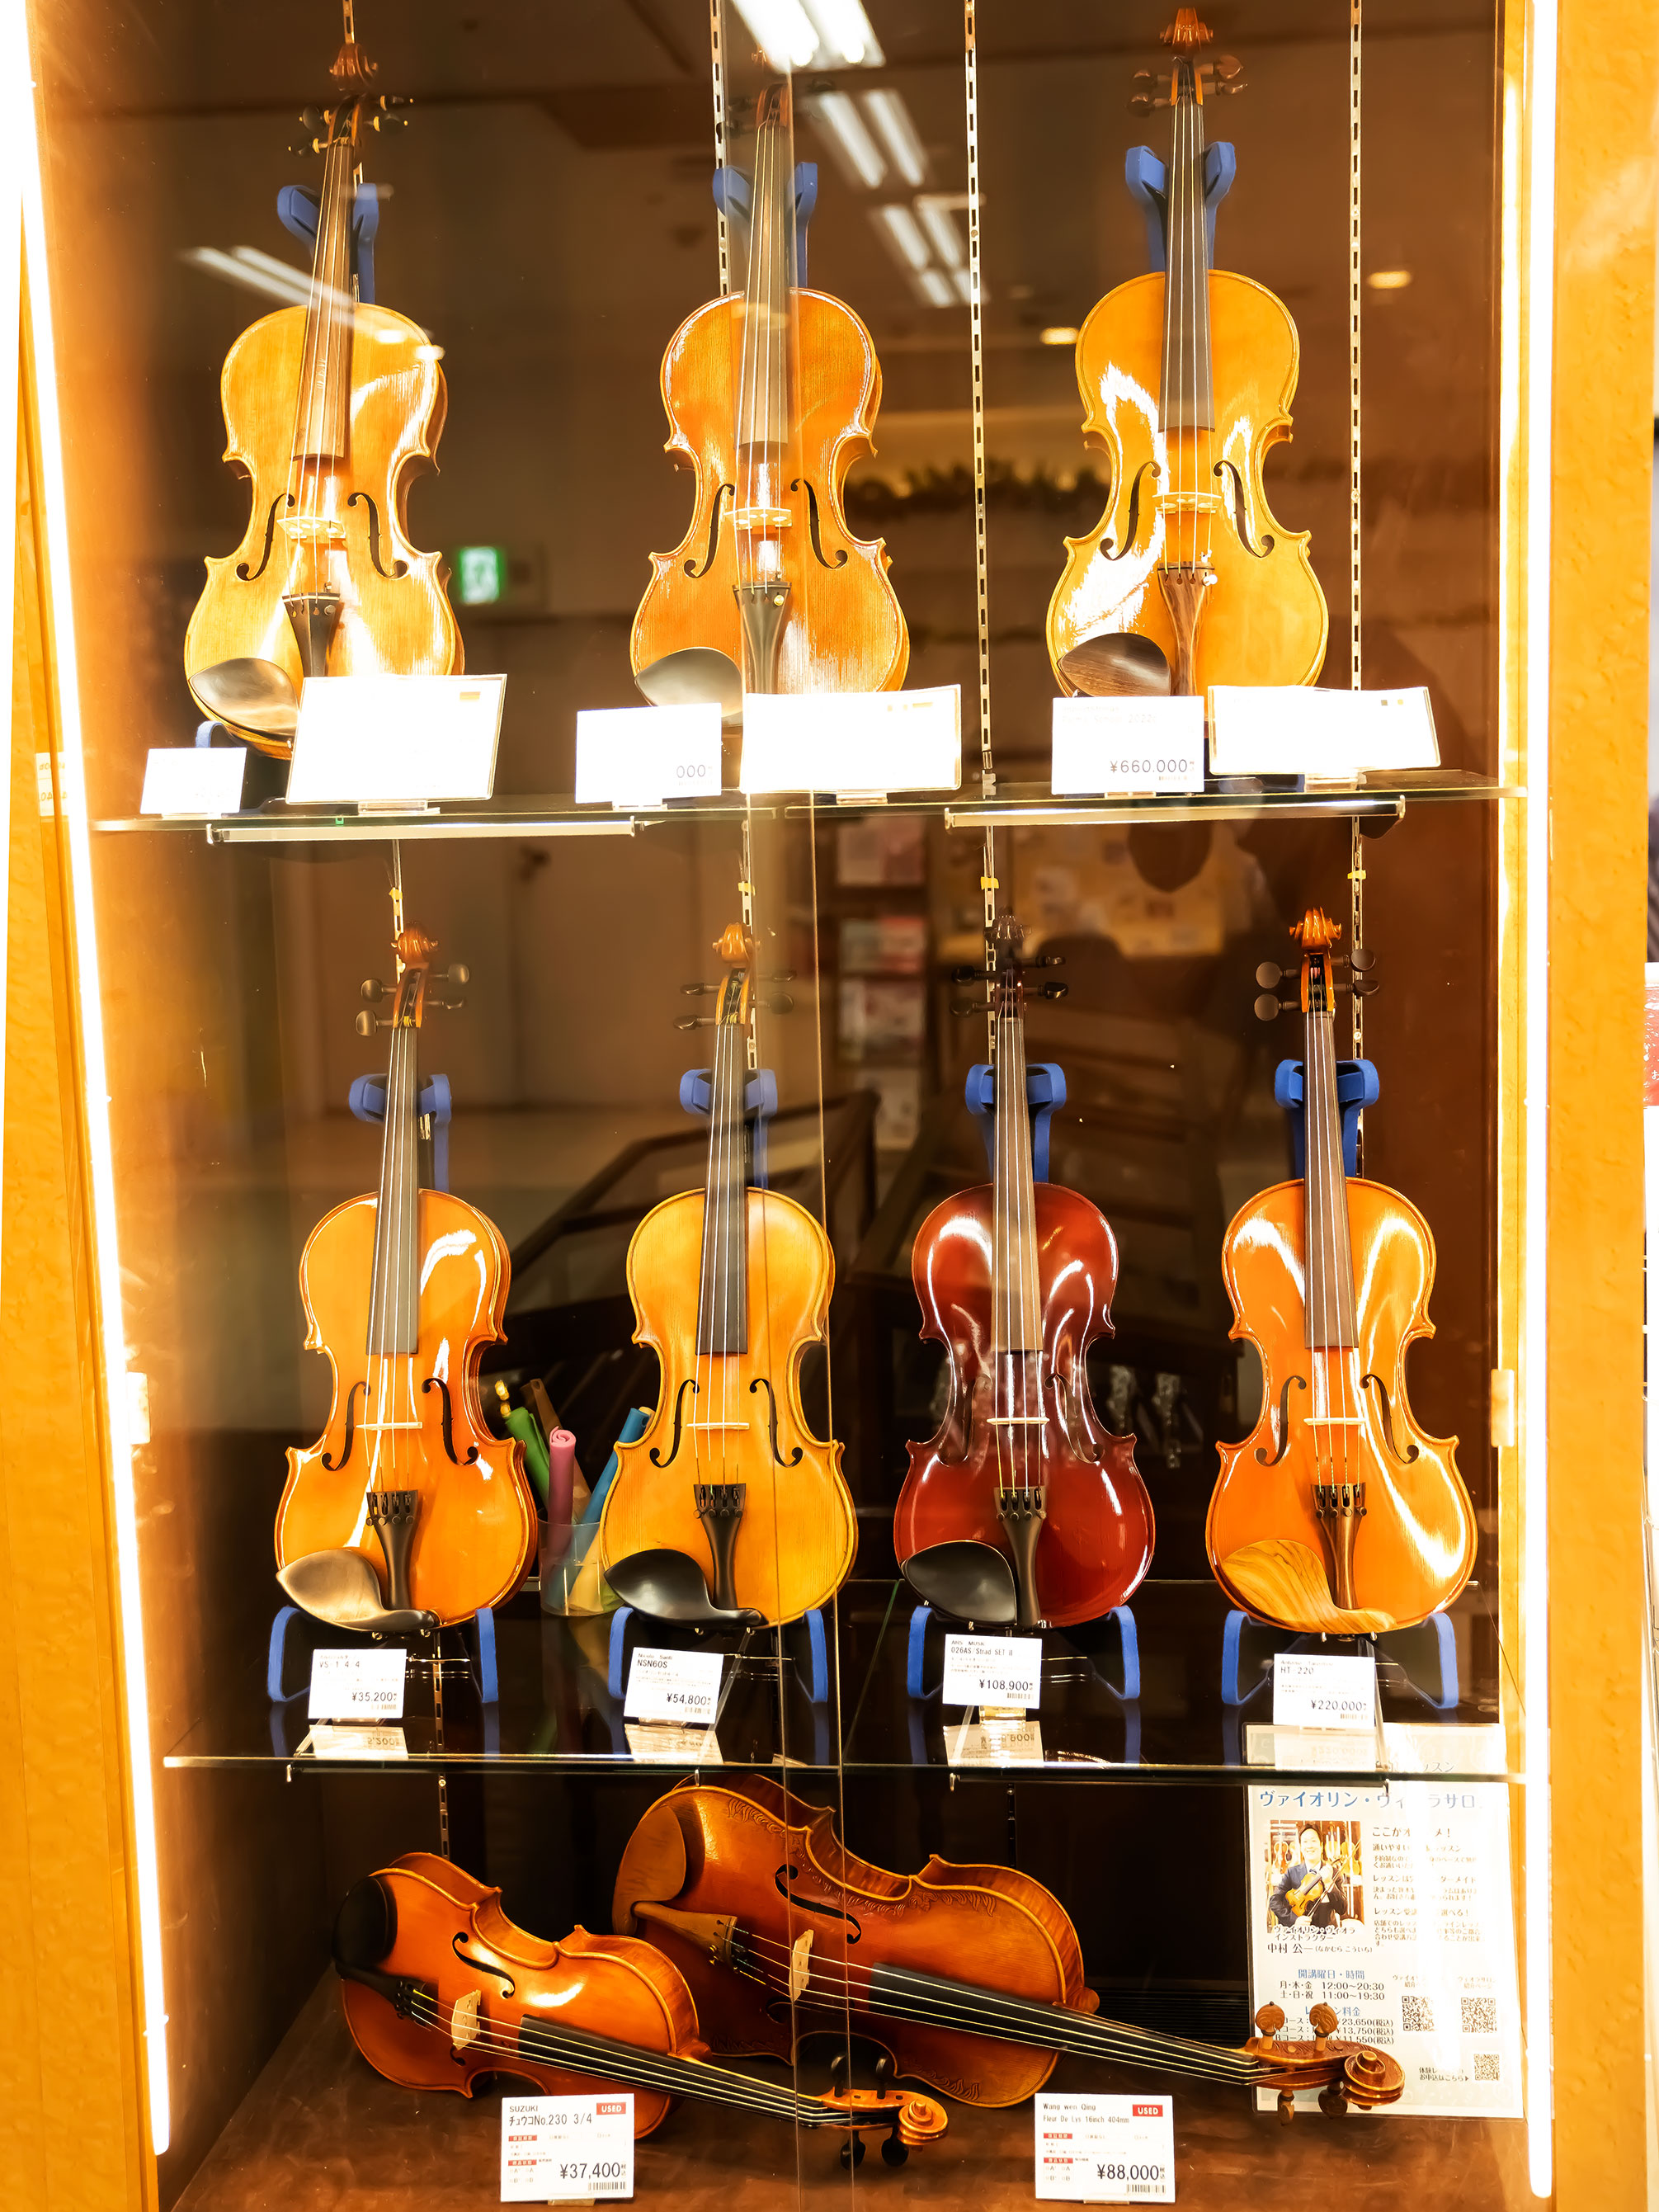 広島でバイオリン、バイオリン弓をお探しなら弦楽器上級アドバイザー常駐の島村楽器広島パルコ店にお任せください。こちらのページでは店頭展示在庫を随時更新しております。楽器の詳細、試奏のご希望等はお気軽にお問い合わせ下さい。 CONTENTSイベント情報バイオリンバイオリン弓チェロ・チェロ弓の展示情報はこ […]